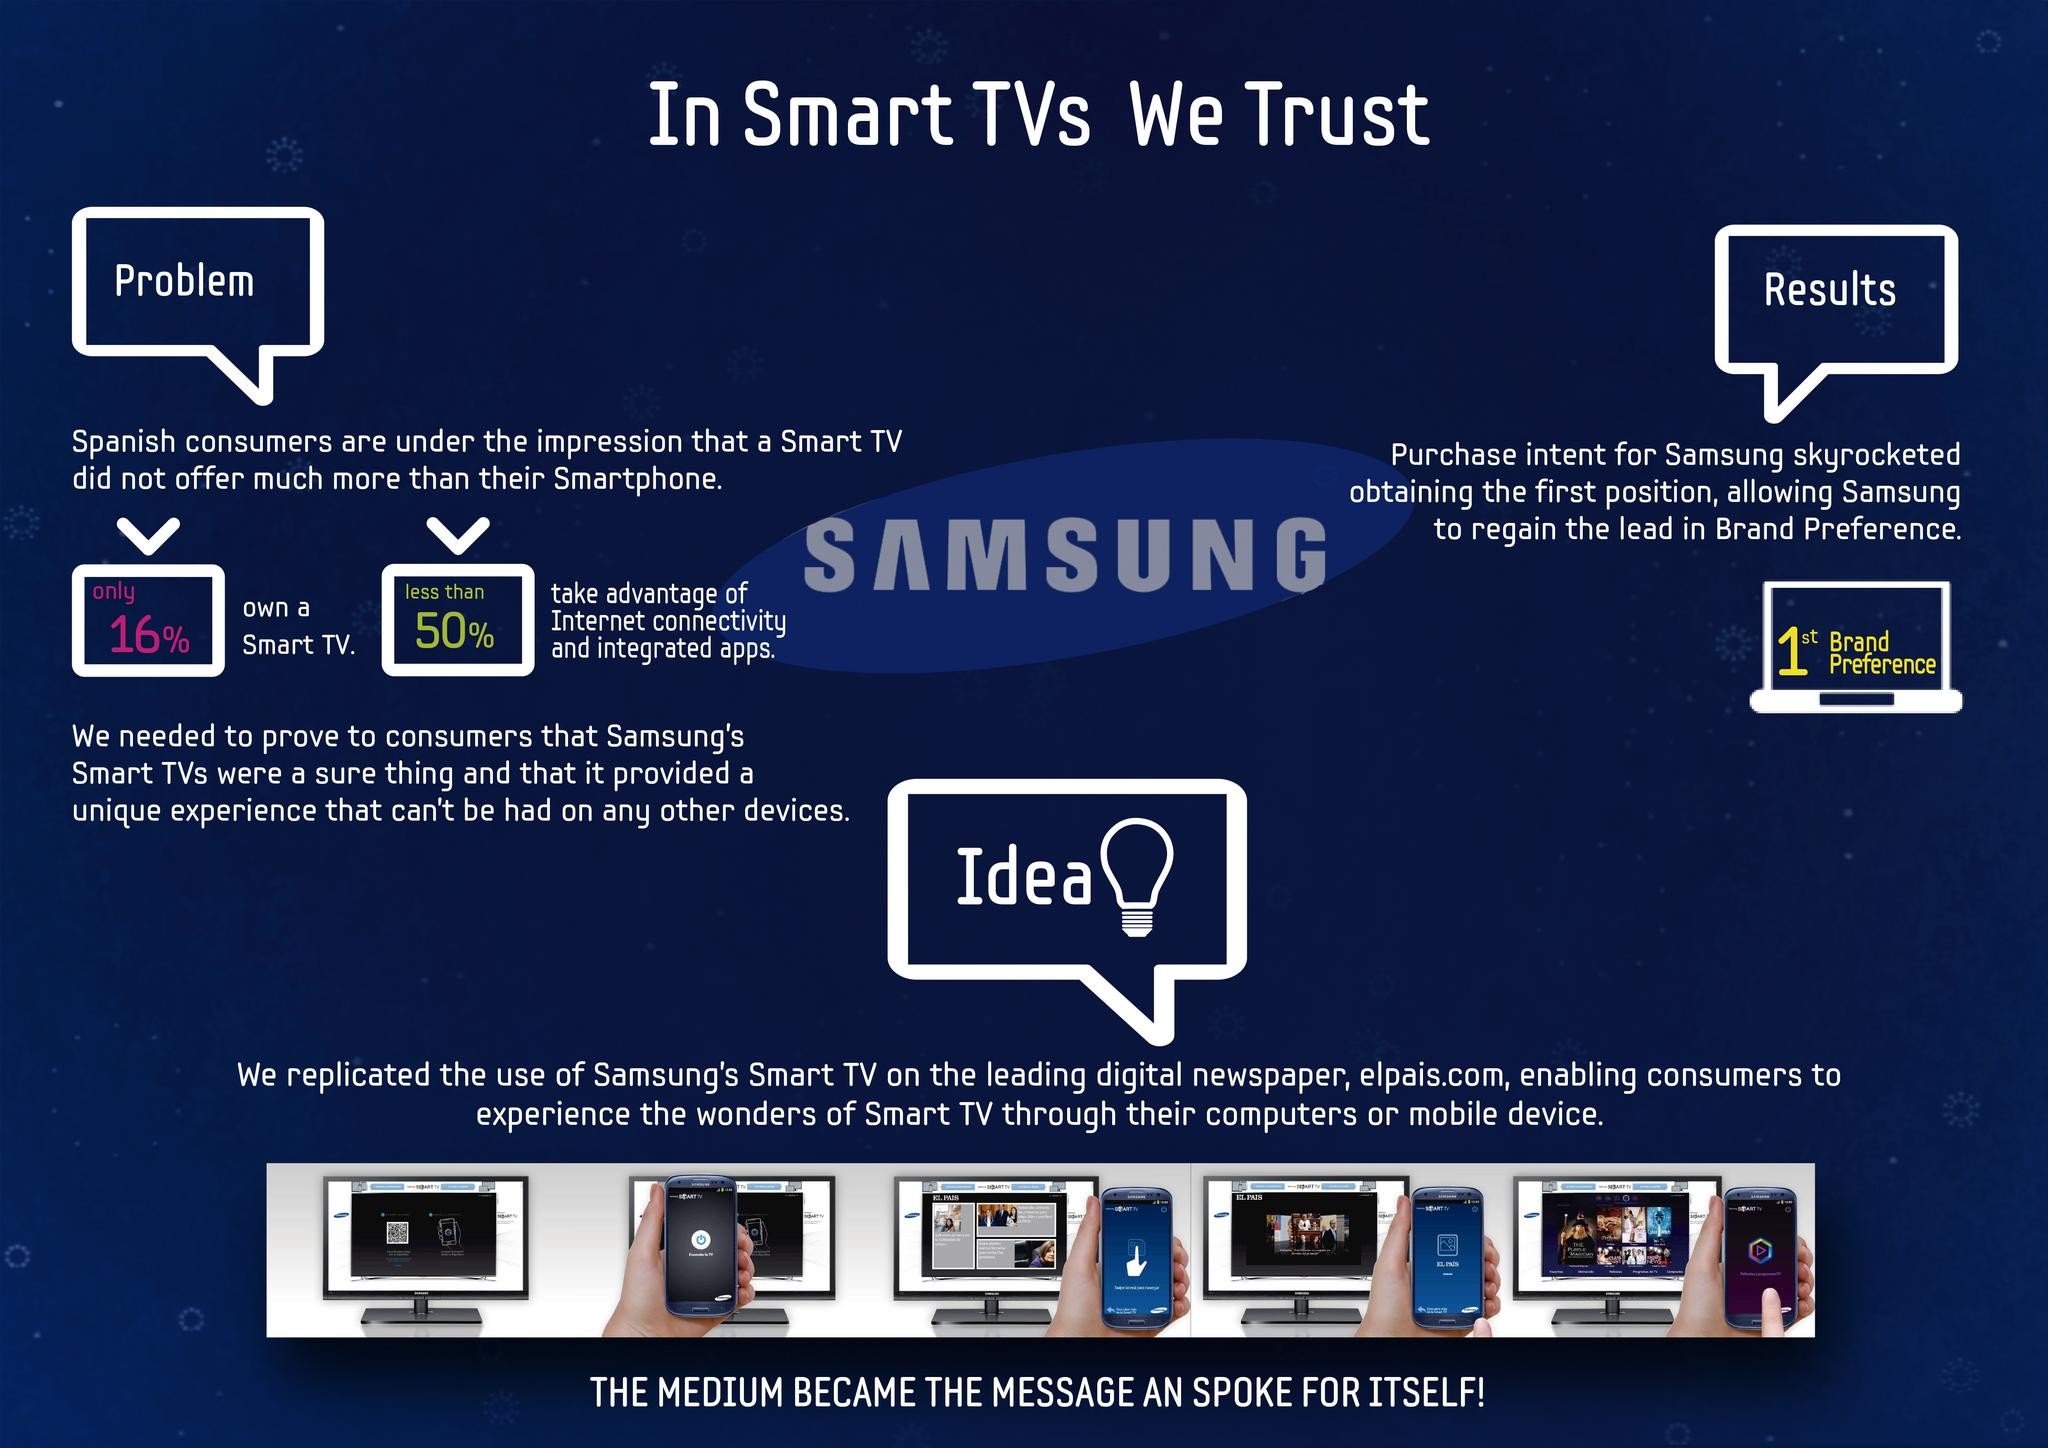 IN SMART TVS WE TRUST